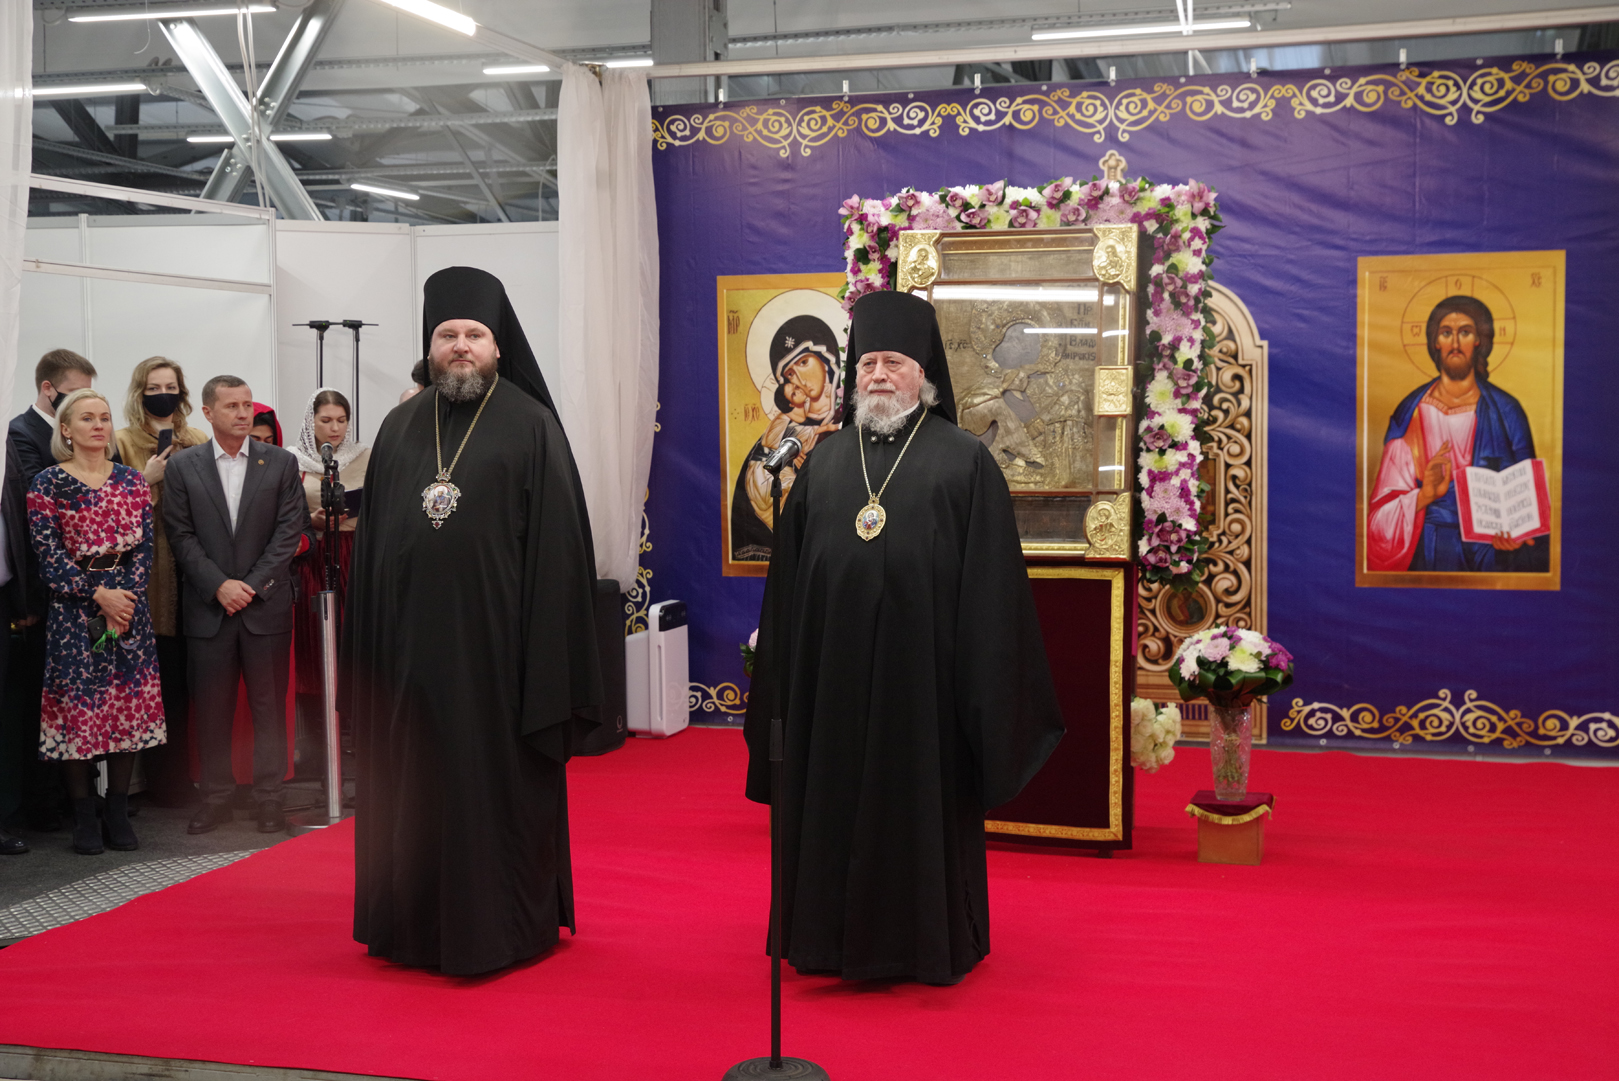 Православная ярмарка в марте в нижнем новгороде. Православная ярмарка в Нижнем Новгороде. Православная ярмарка в Нижнем Новгороде в 2022. Православная ярмарка в Нижнем Новгороде в 2022 году в феврале. Когда будет православная ярмарка в Нижнем Новгороде в 2022 году.